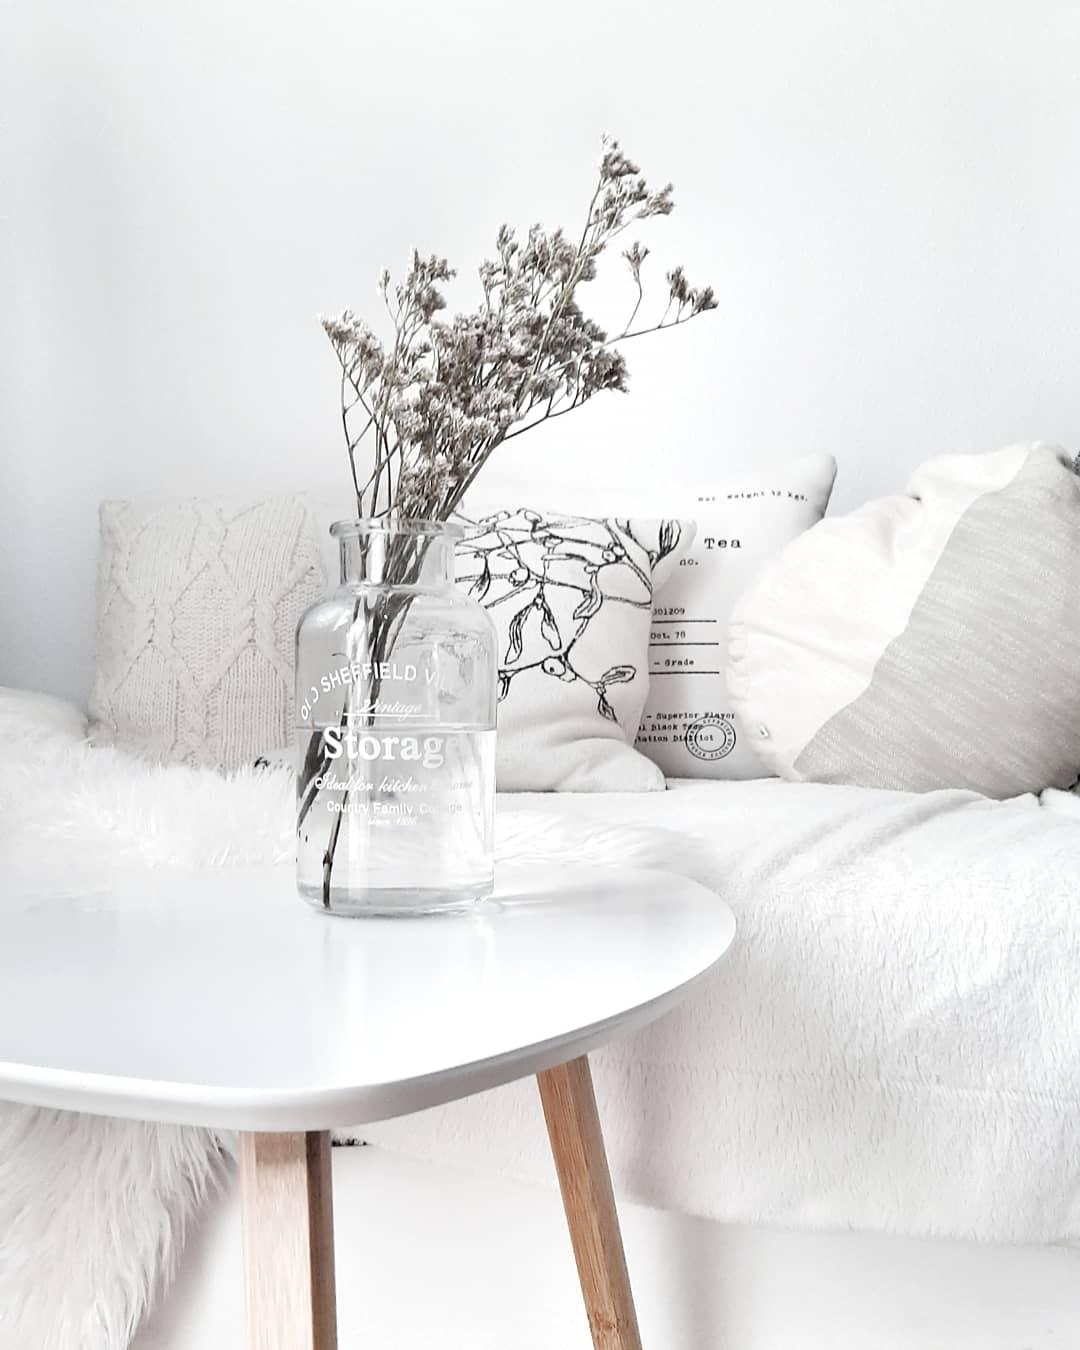 pure und simple
#livingchallenge #wohnzimmergestaltung
 #couch